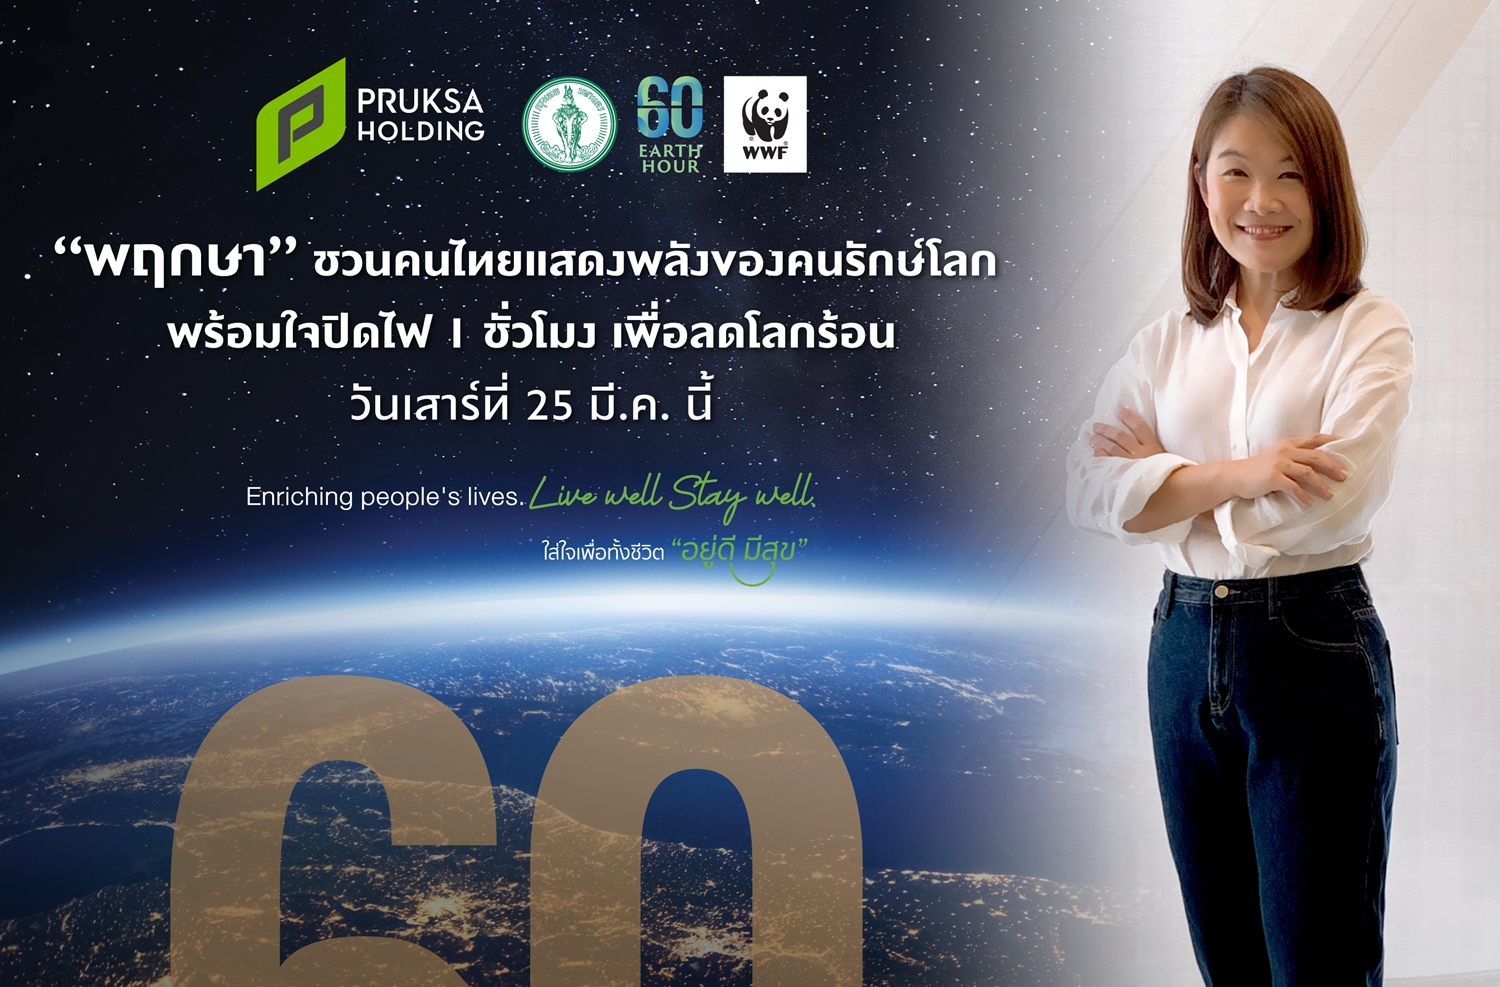 “พฤกษา” ชวนคนไทยแสดงพลังของคนรักษ์โลก พร้อมใจปิดไฟ 1 ชั่วโมง เพื่อลดโลกร้อน เสาร์ที่ 25 มี.ค.นี้